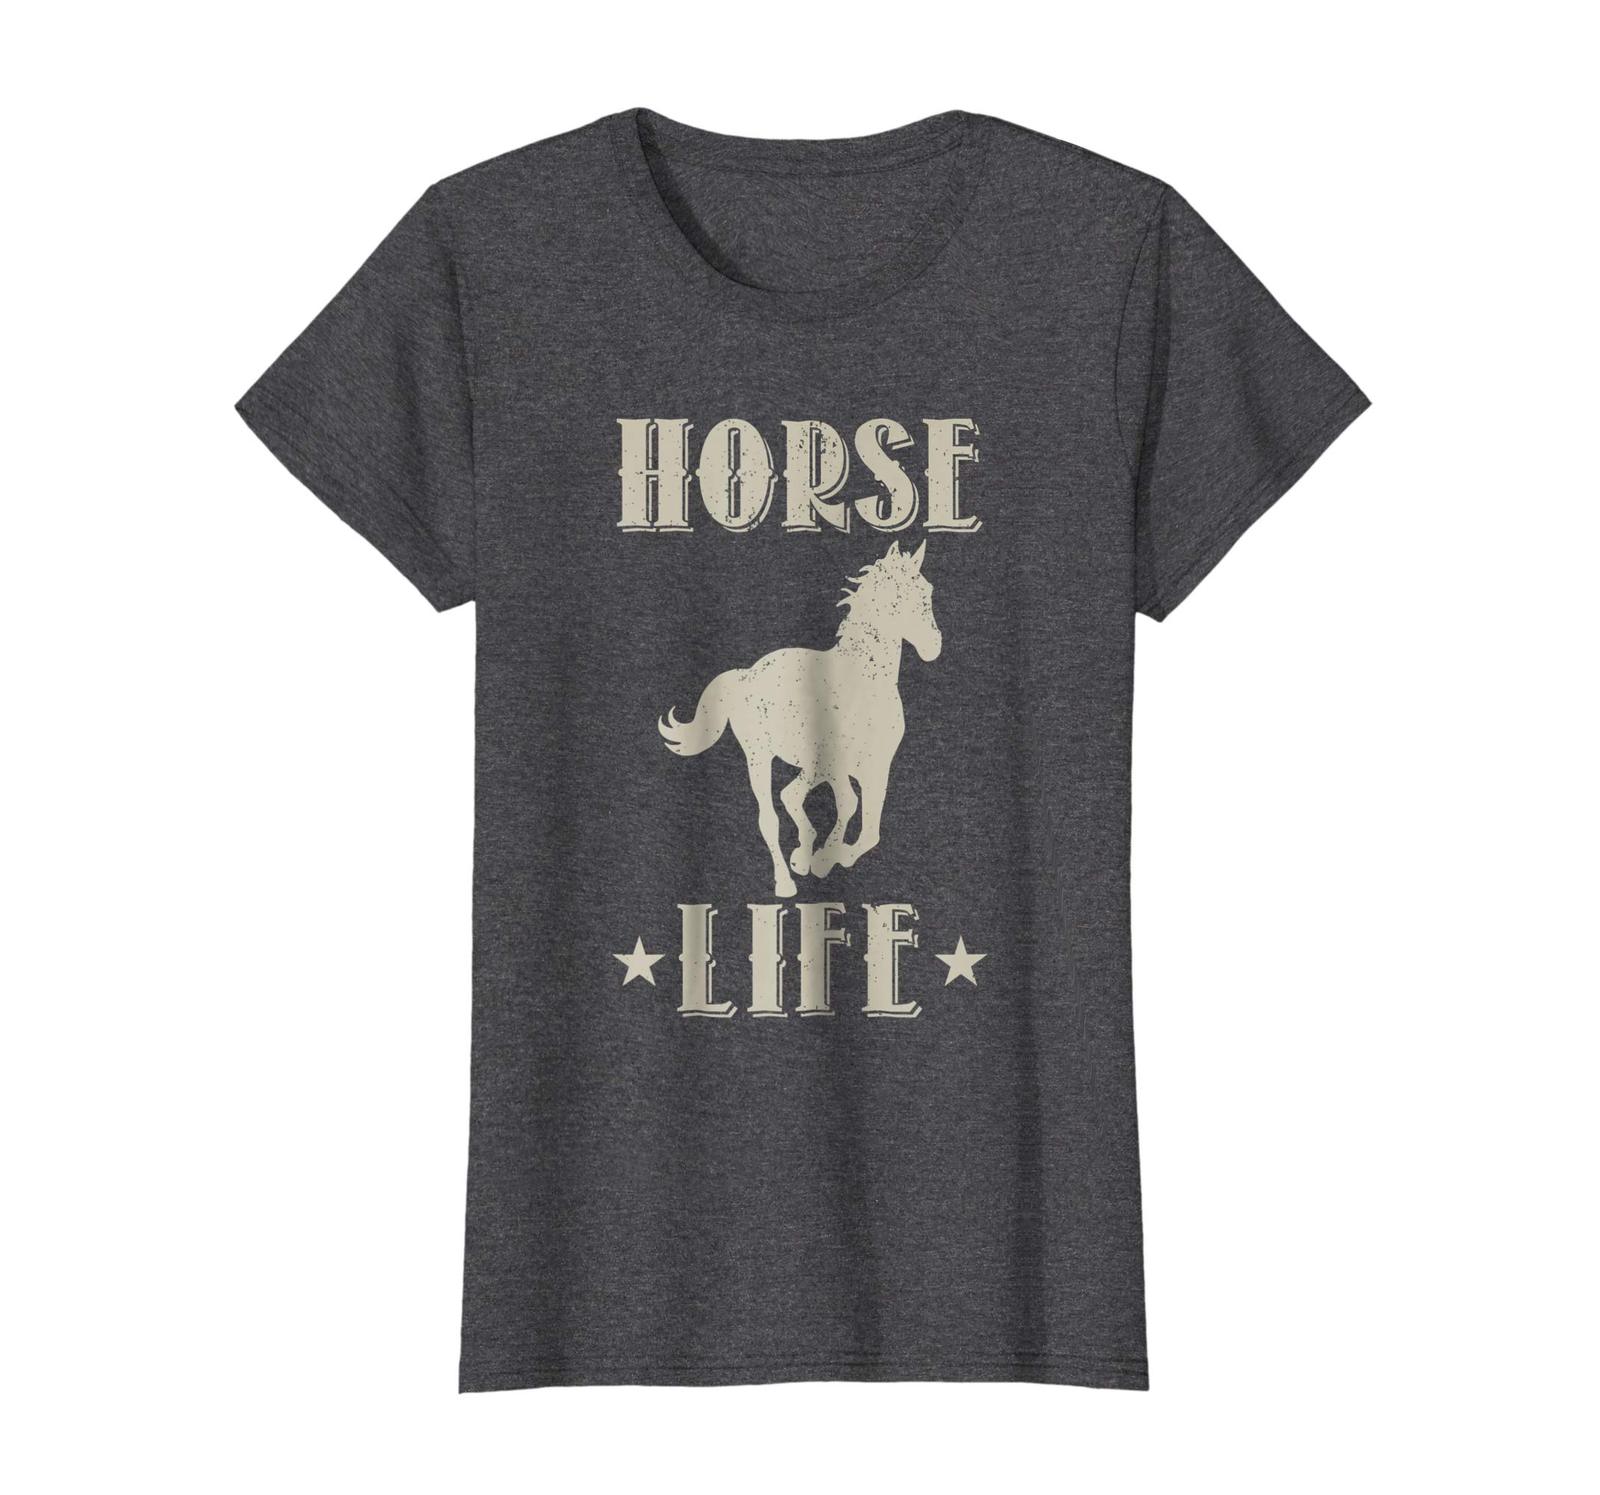 Dog Fashion - Horse Life T-Shirt - Best Gift Idea (Men Women Teens Kids Wowen